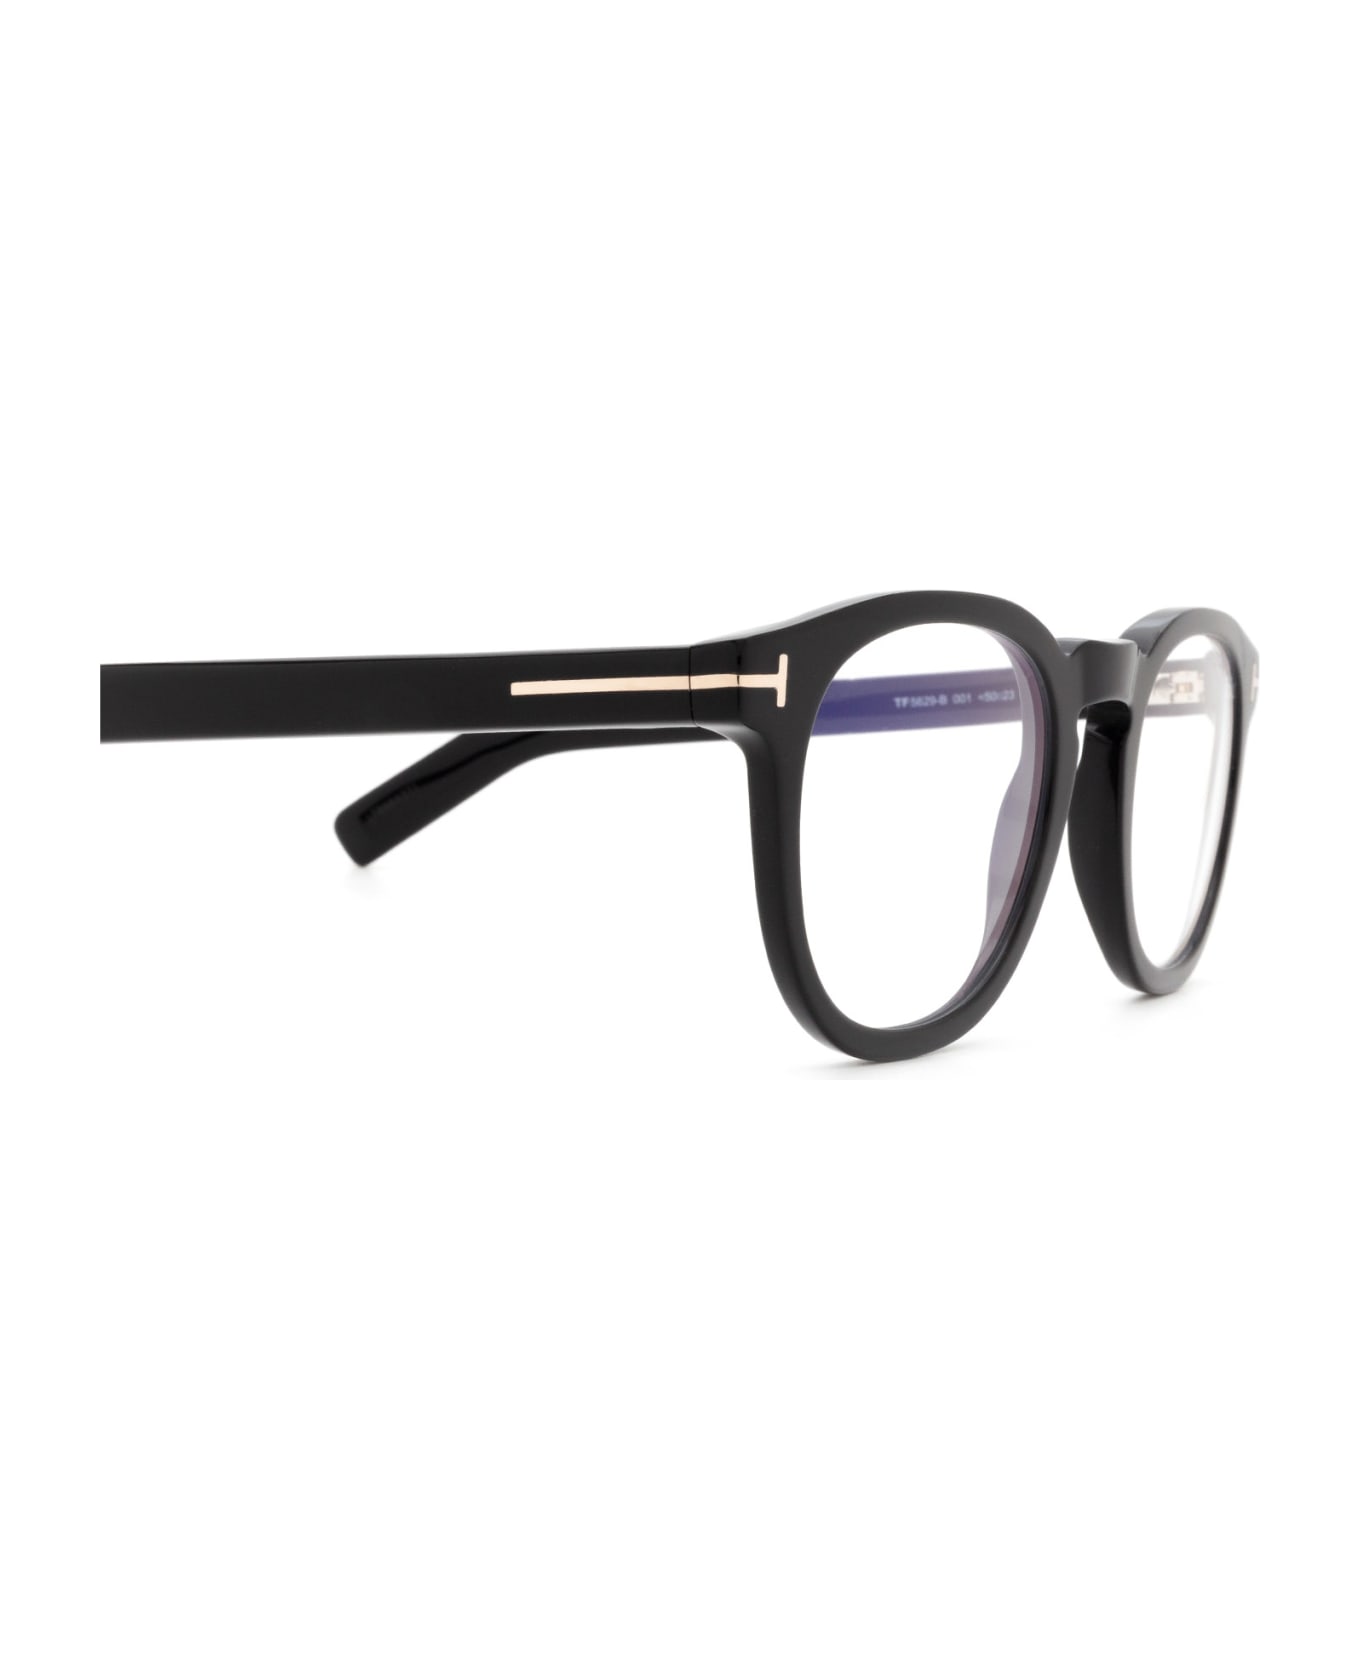 Tom Ford Eyewear Ft5629-b Shiny Black Glasses - Shiny Black